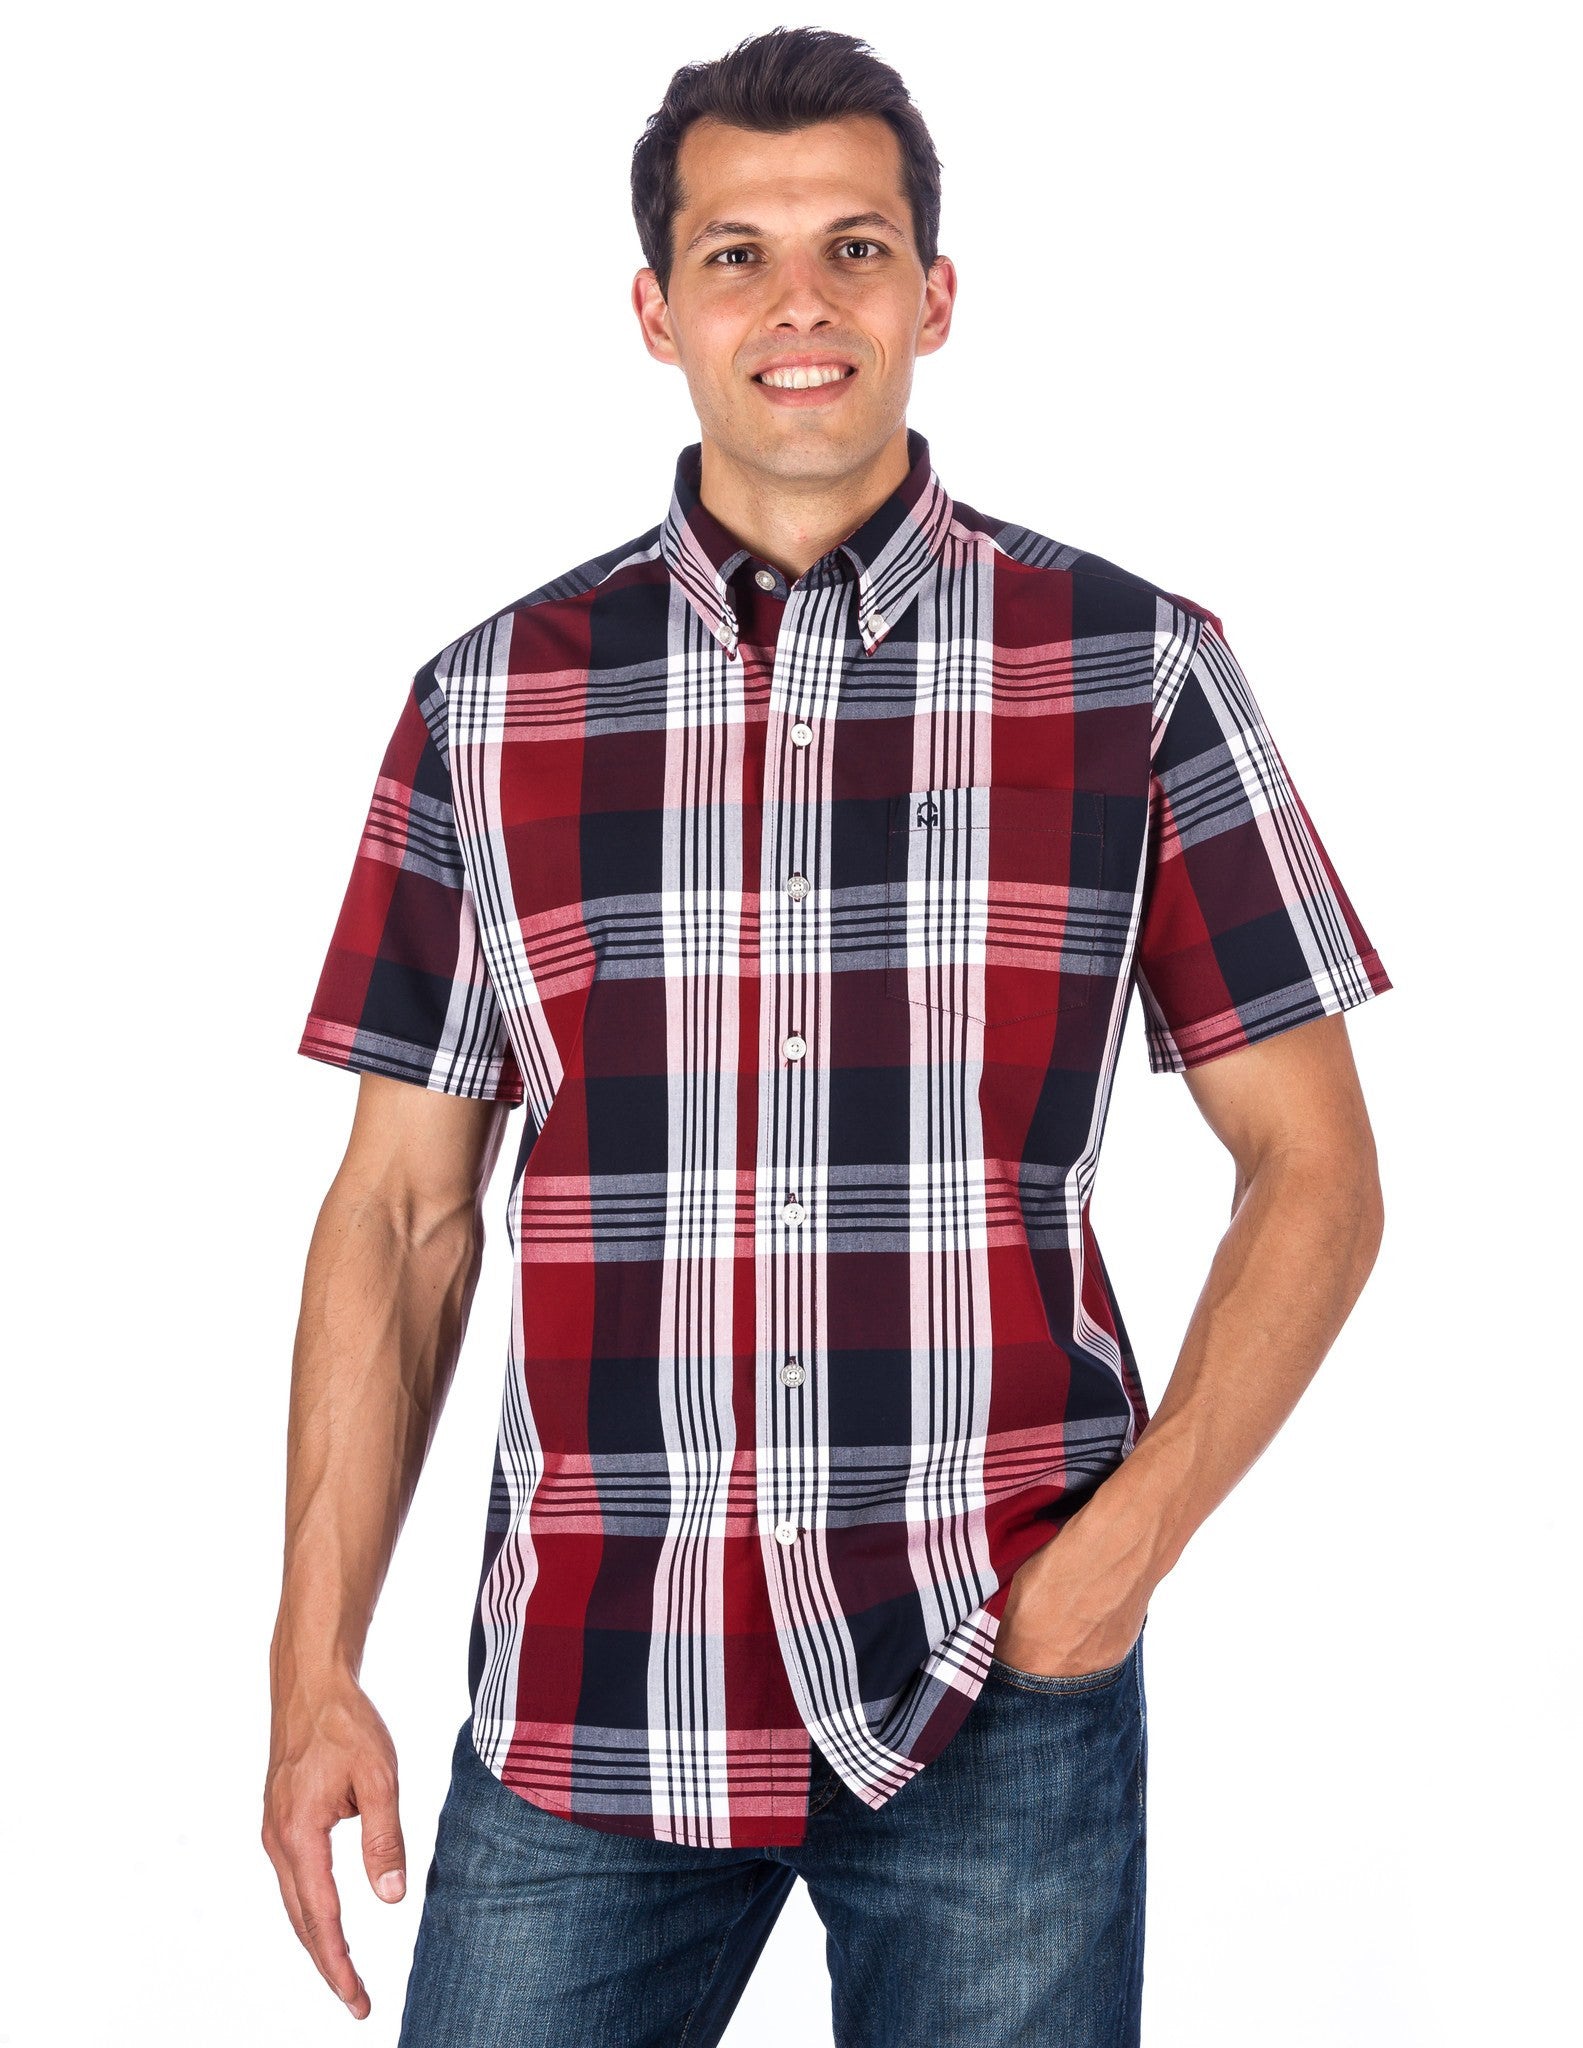 Men's 100% Cotton Casual Short Sleeve Shirt - Regular Fit